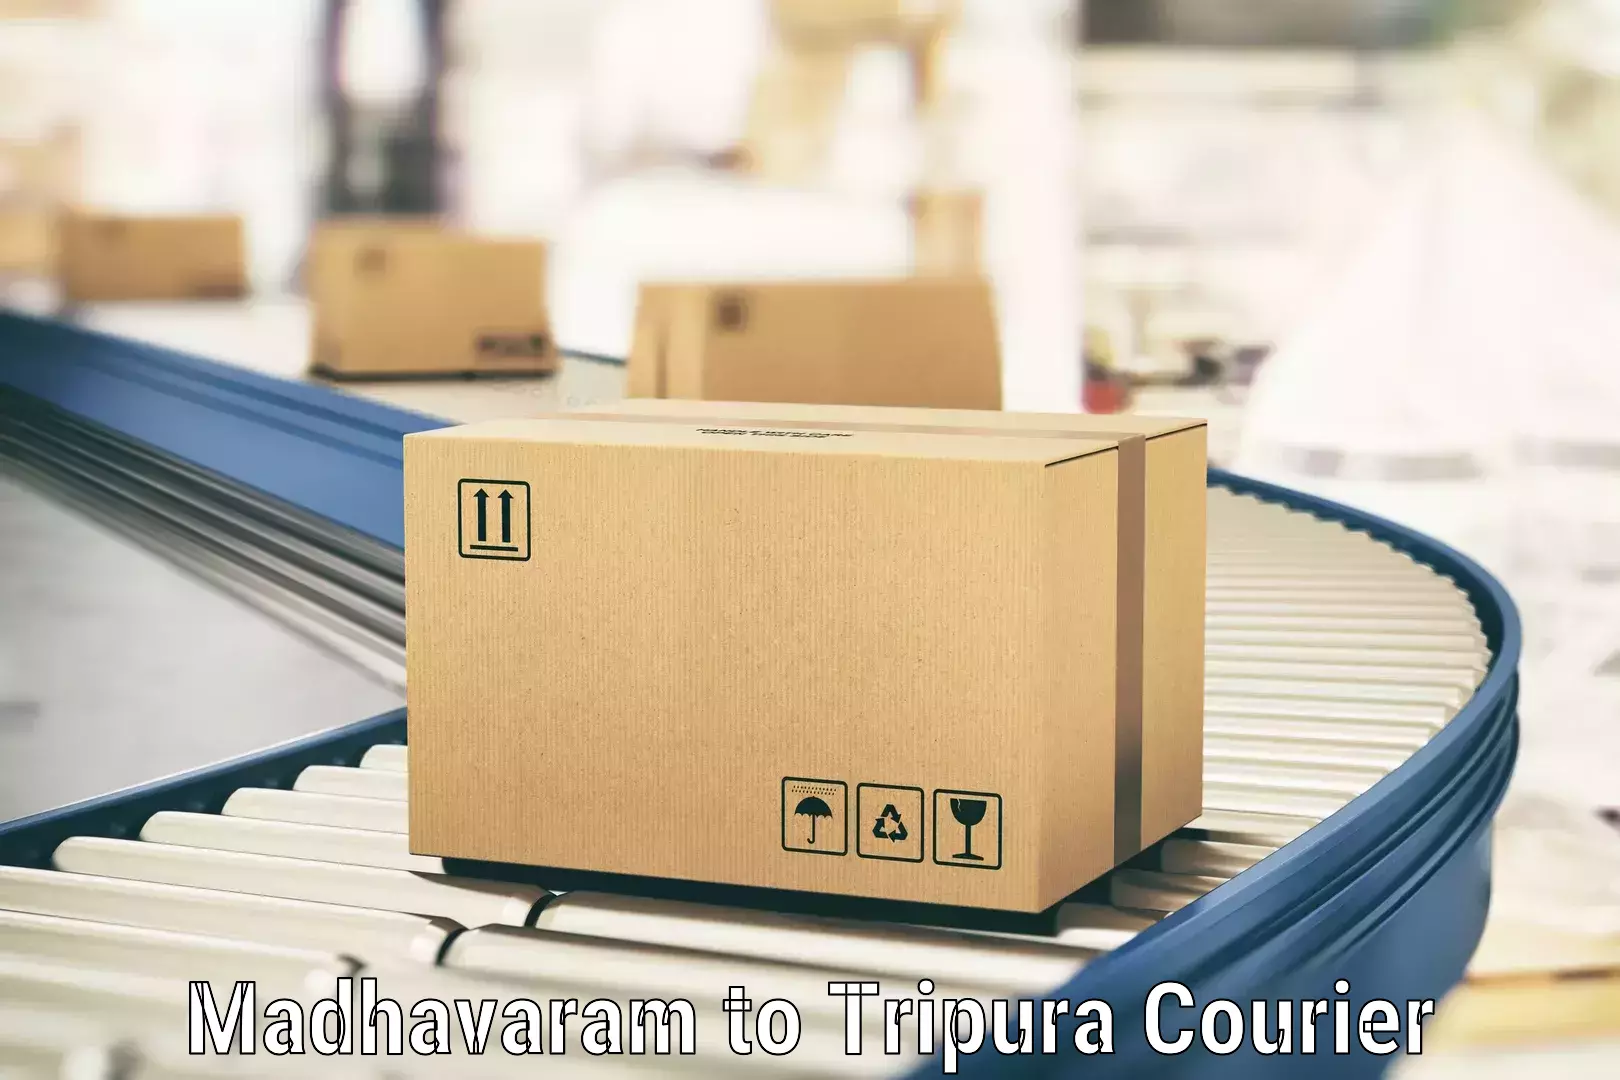 Efficient cargo services Madhavaram to Udaipur Tripura